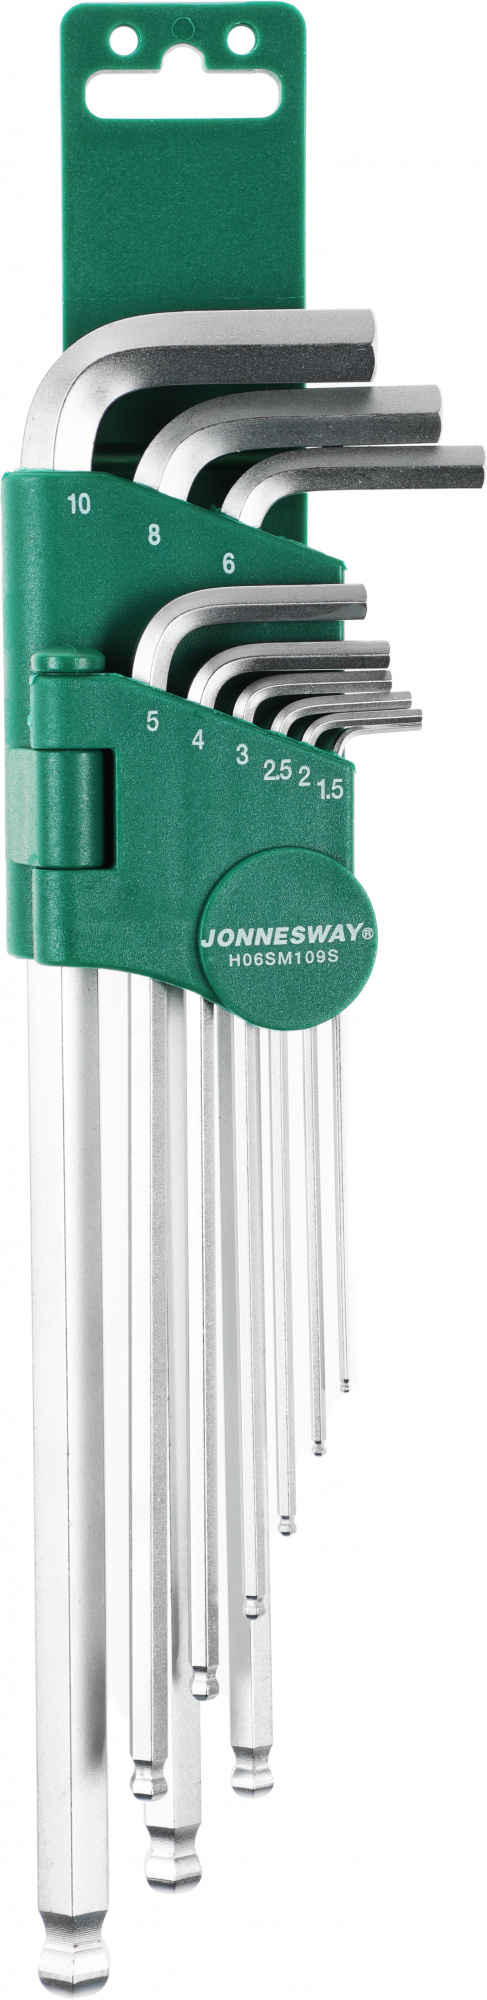 Набор ключей Jonnesway H06SM109S (047096)